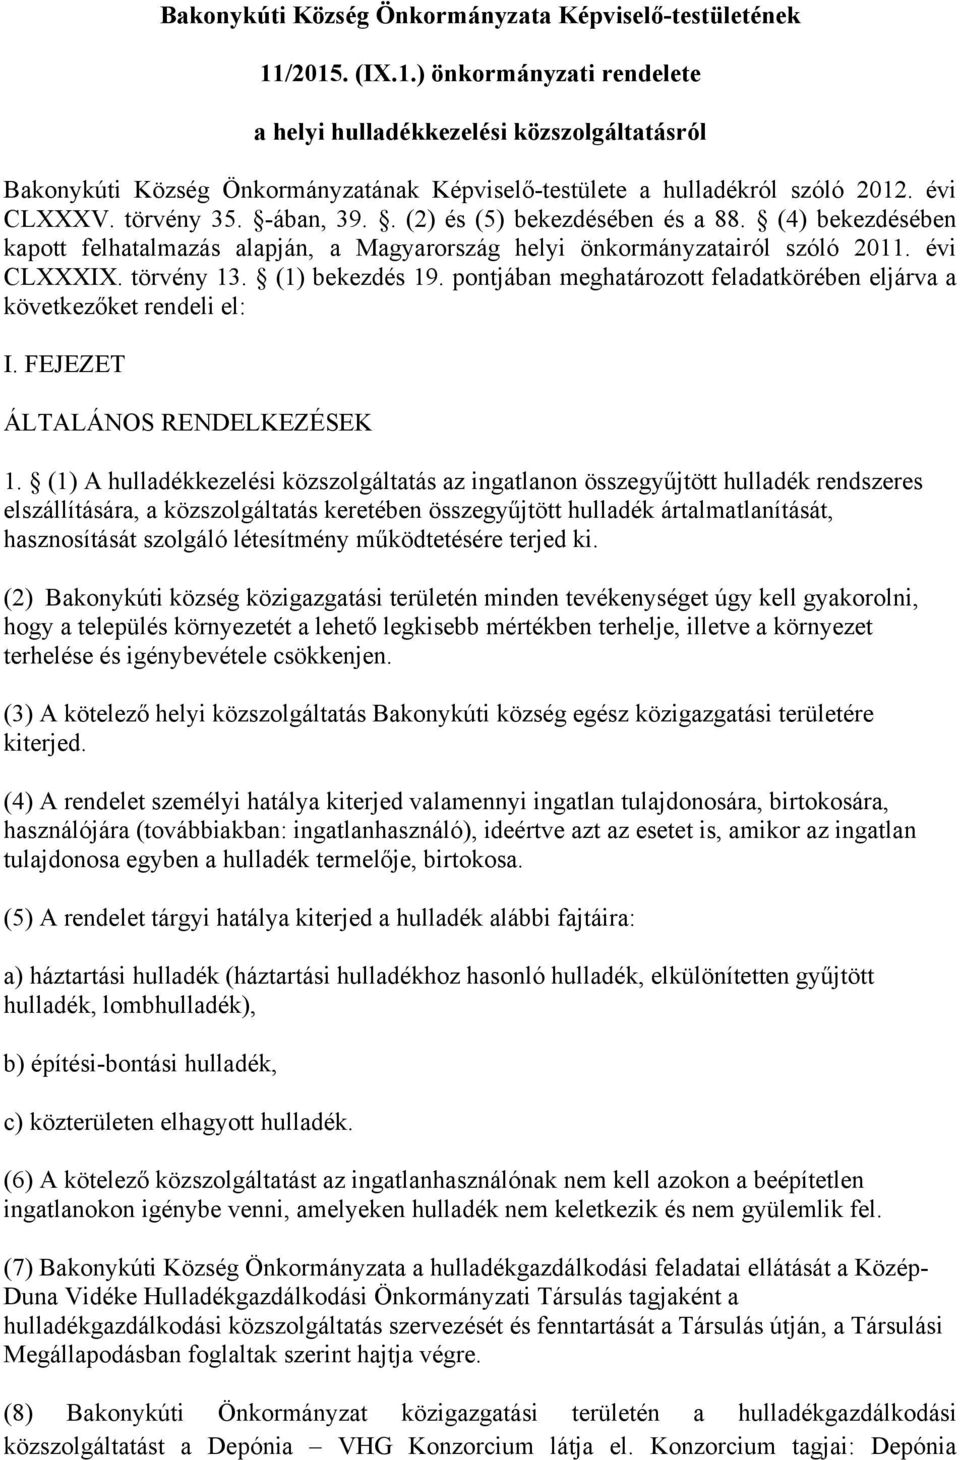 . (2) és (5) bekezdésében és a 88. (4) bekezdésében kapott felhatalmazás alapján, a Magyarország helyi önkormányzatairól szóló 2011. évi CLXXXIX. törvény 13. (1) bekezdés 19.